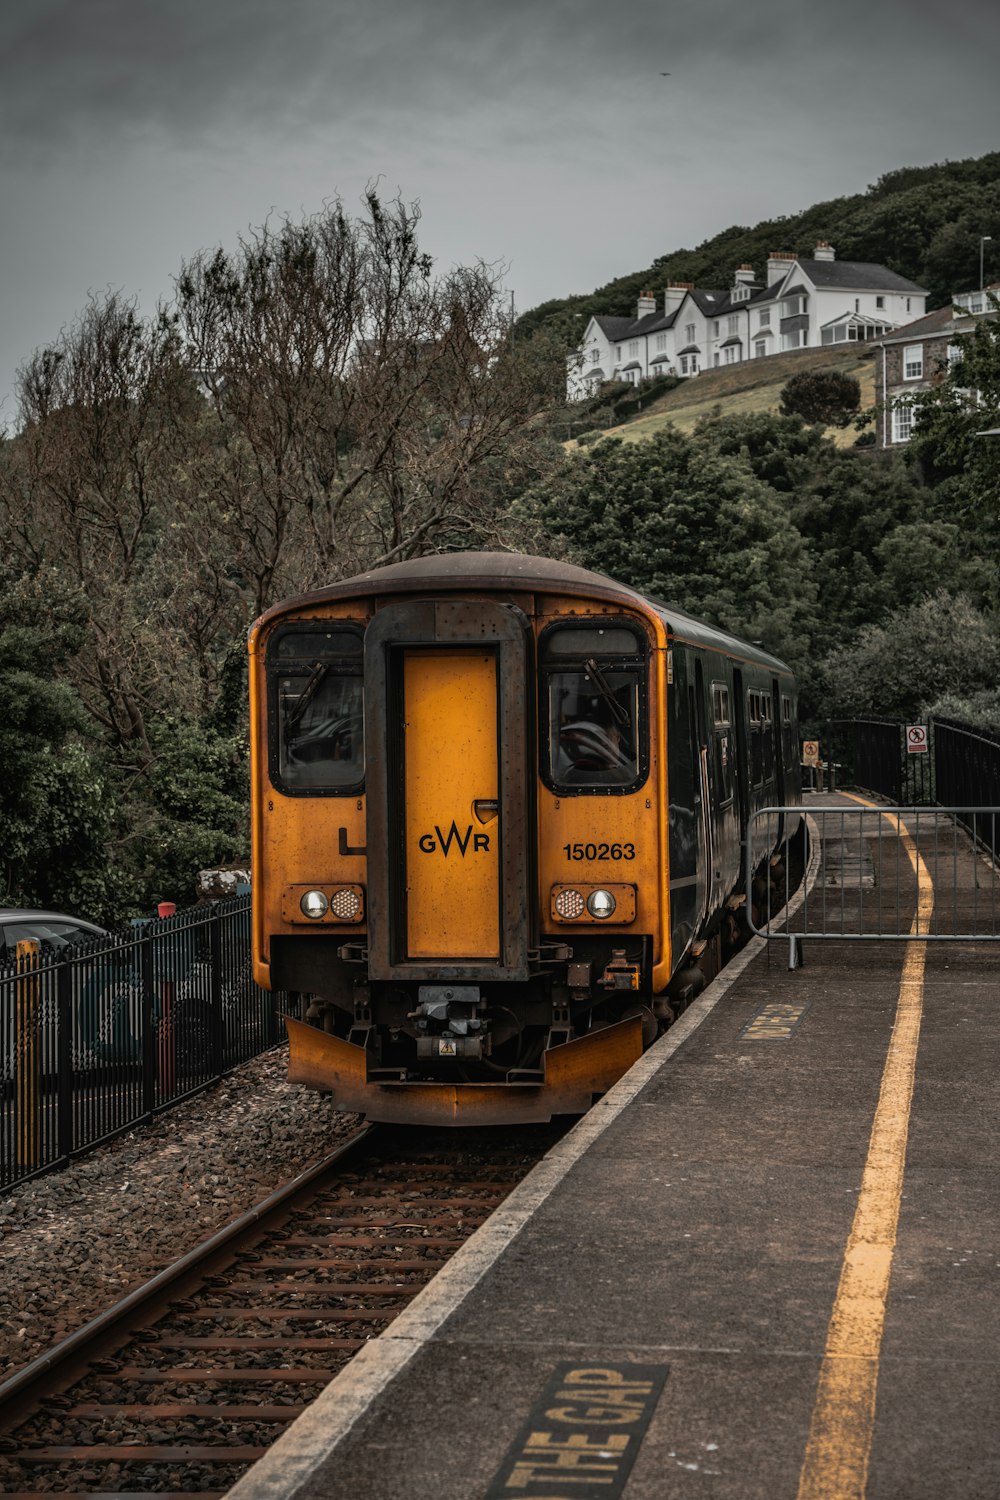 Un treno giallo che viaggia lungo i binari del treno accanto a una collina verde lussureggiante